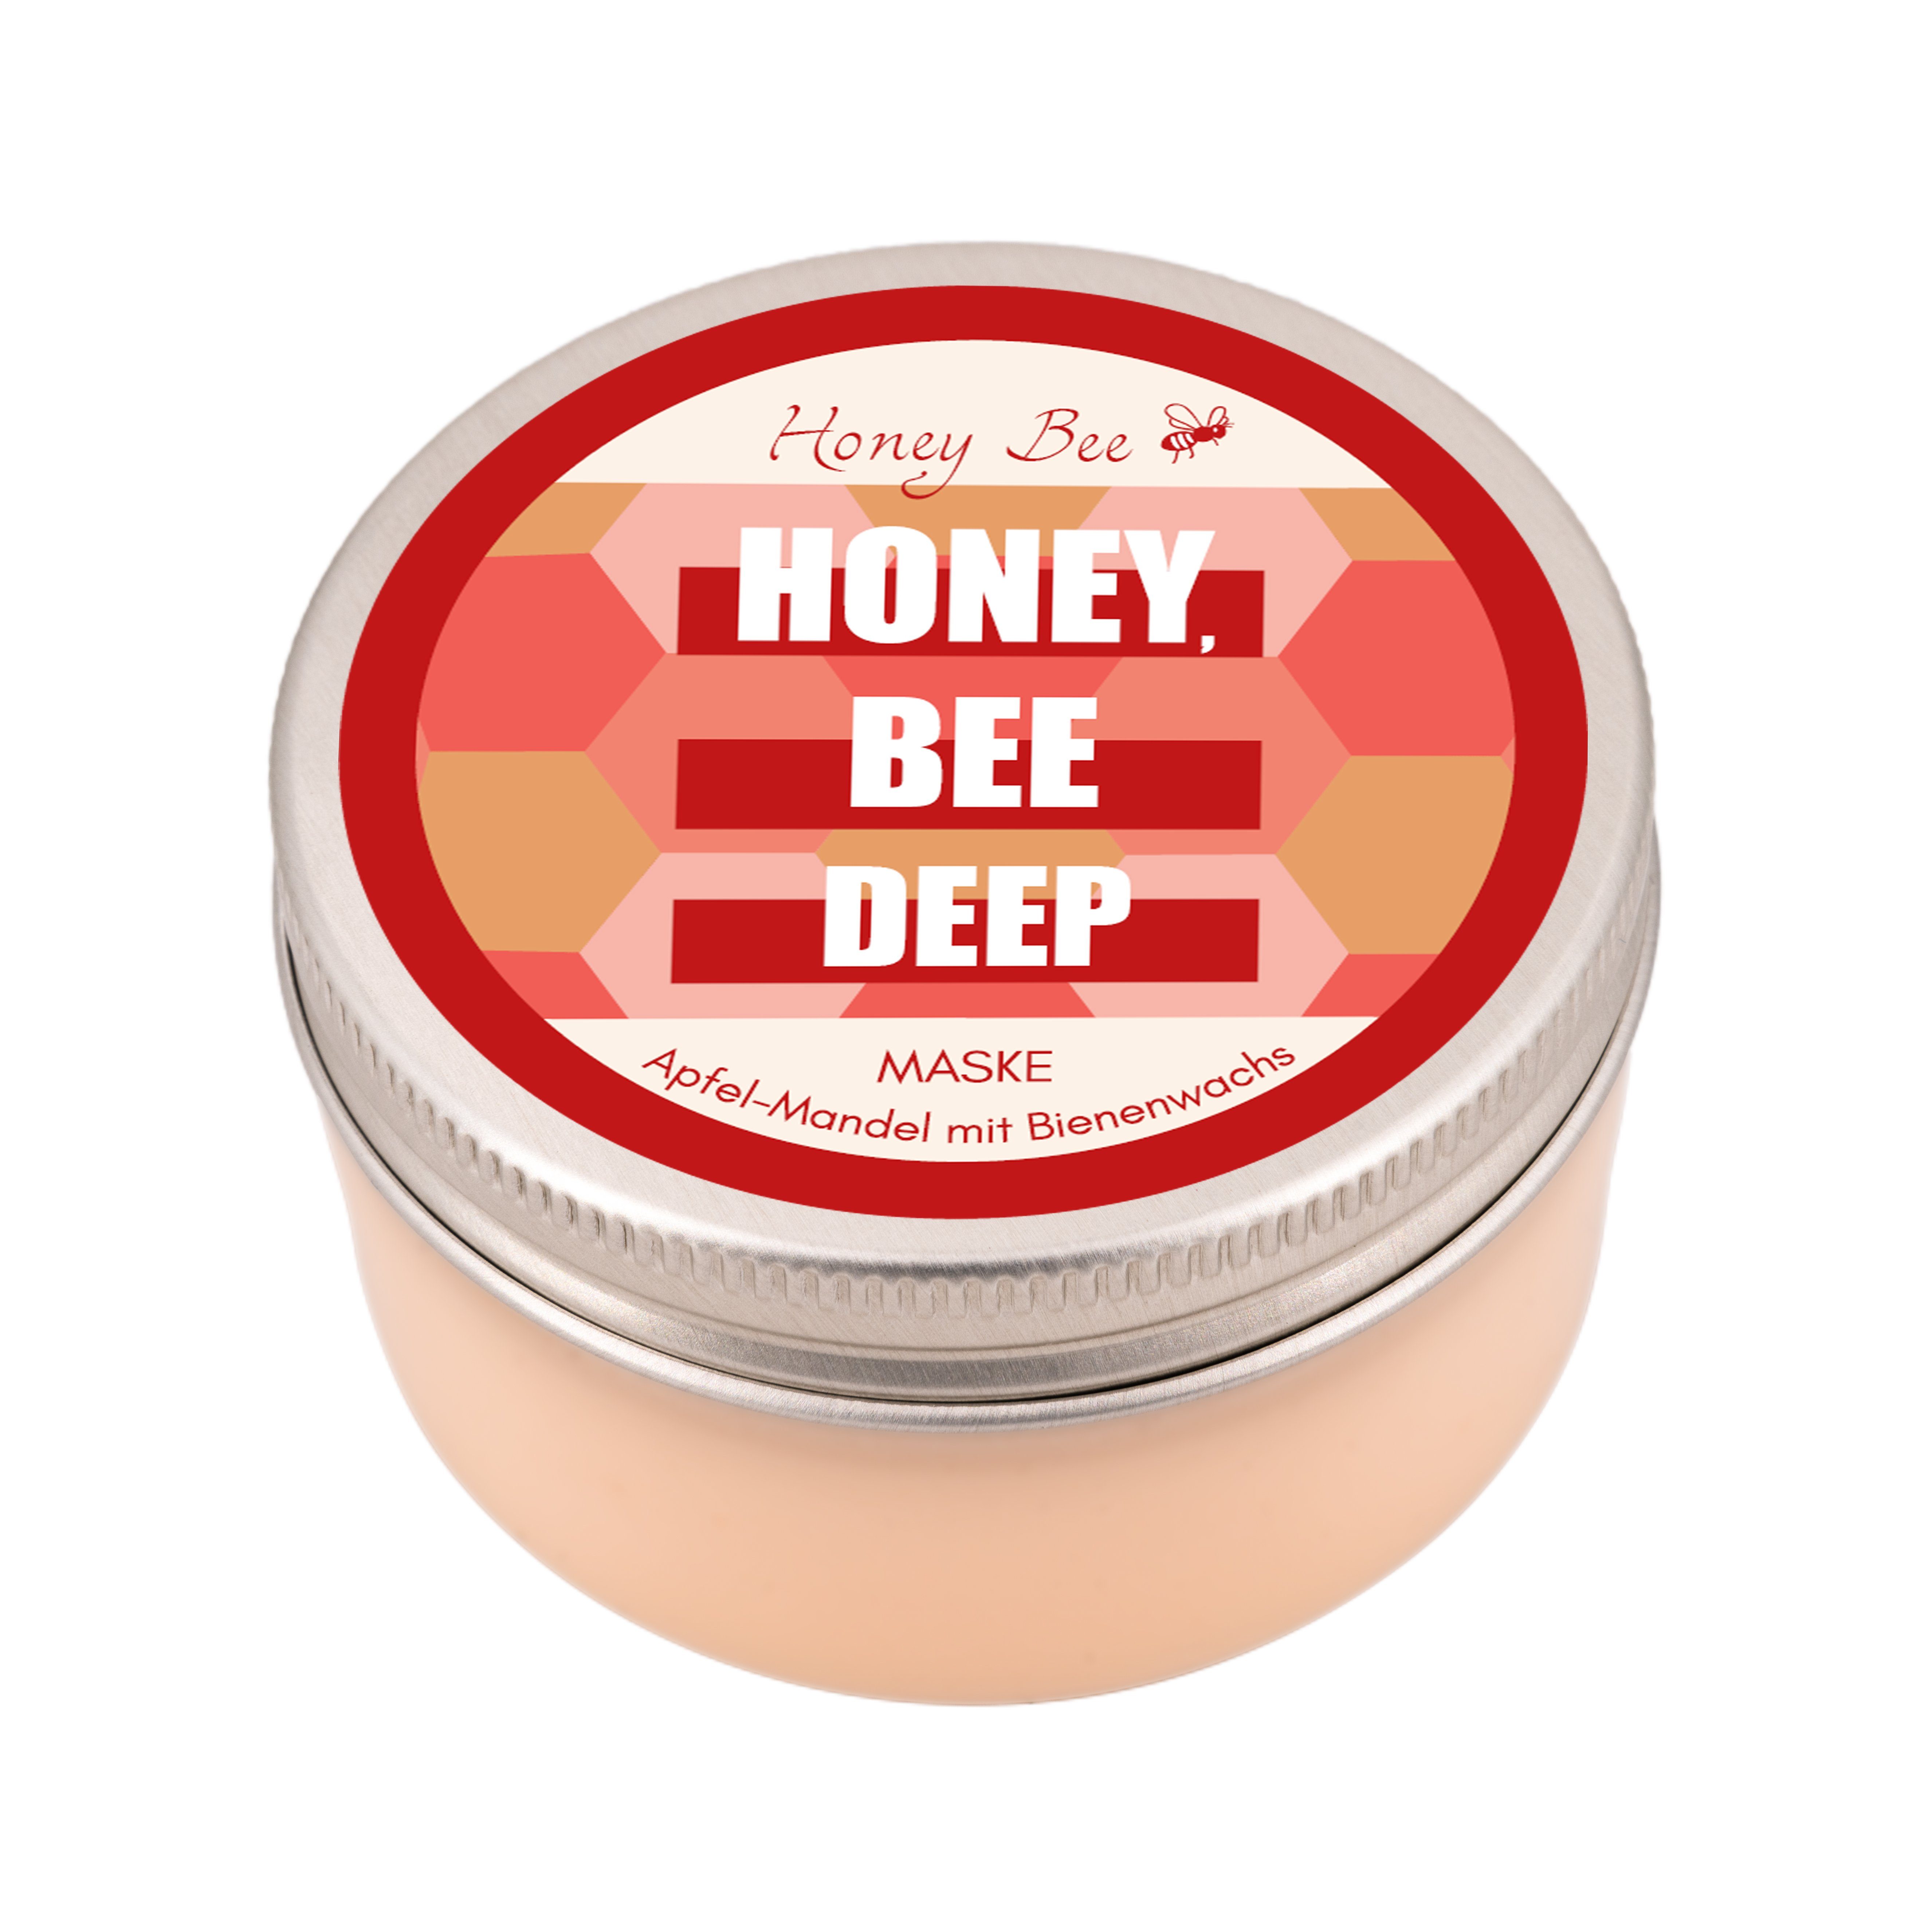 Matica Cosmetics Gesichtreinigungs-Set Honey Set, Beauty Bee Super Naturkosmetik reichhaltig